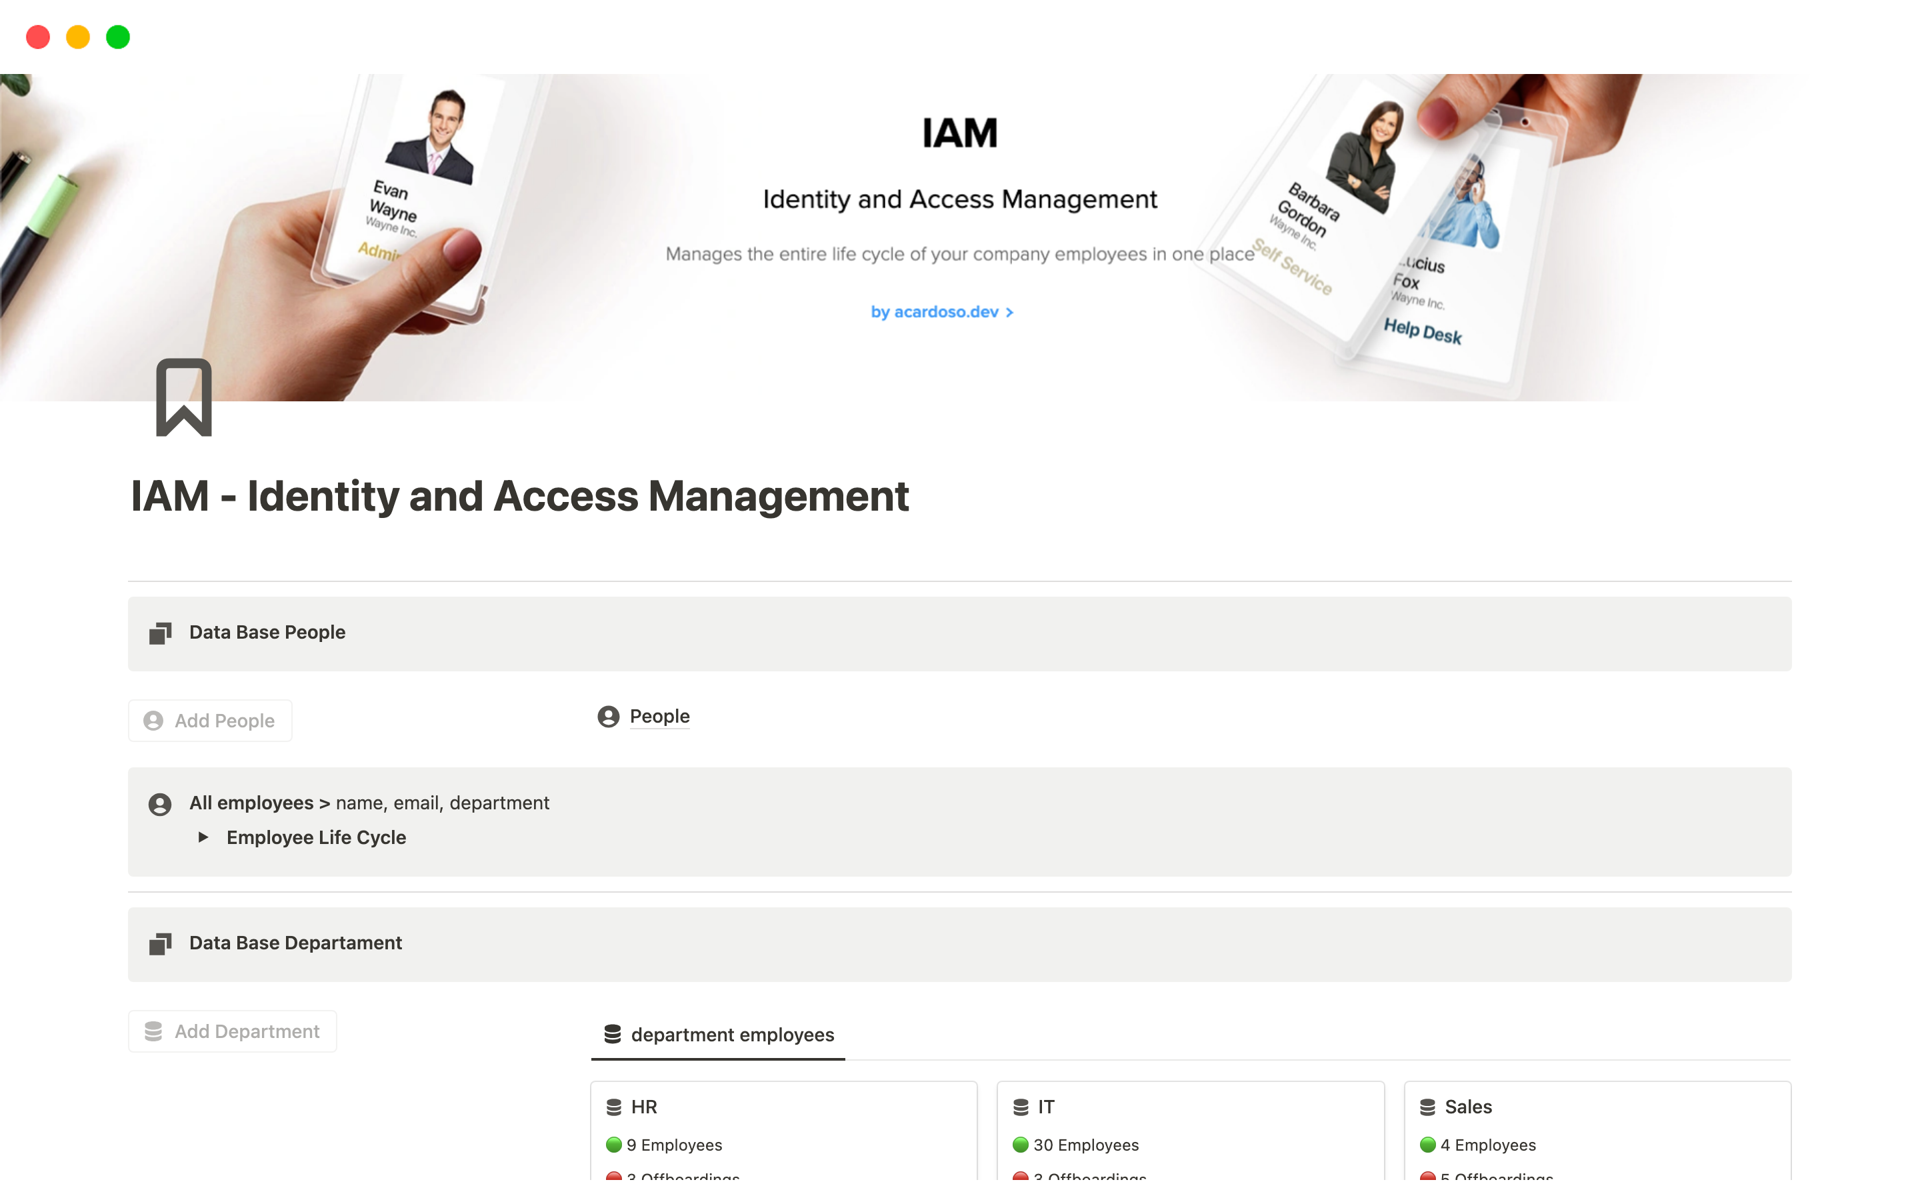 Aperçu du modèle de IAM - Identity and Access Management